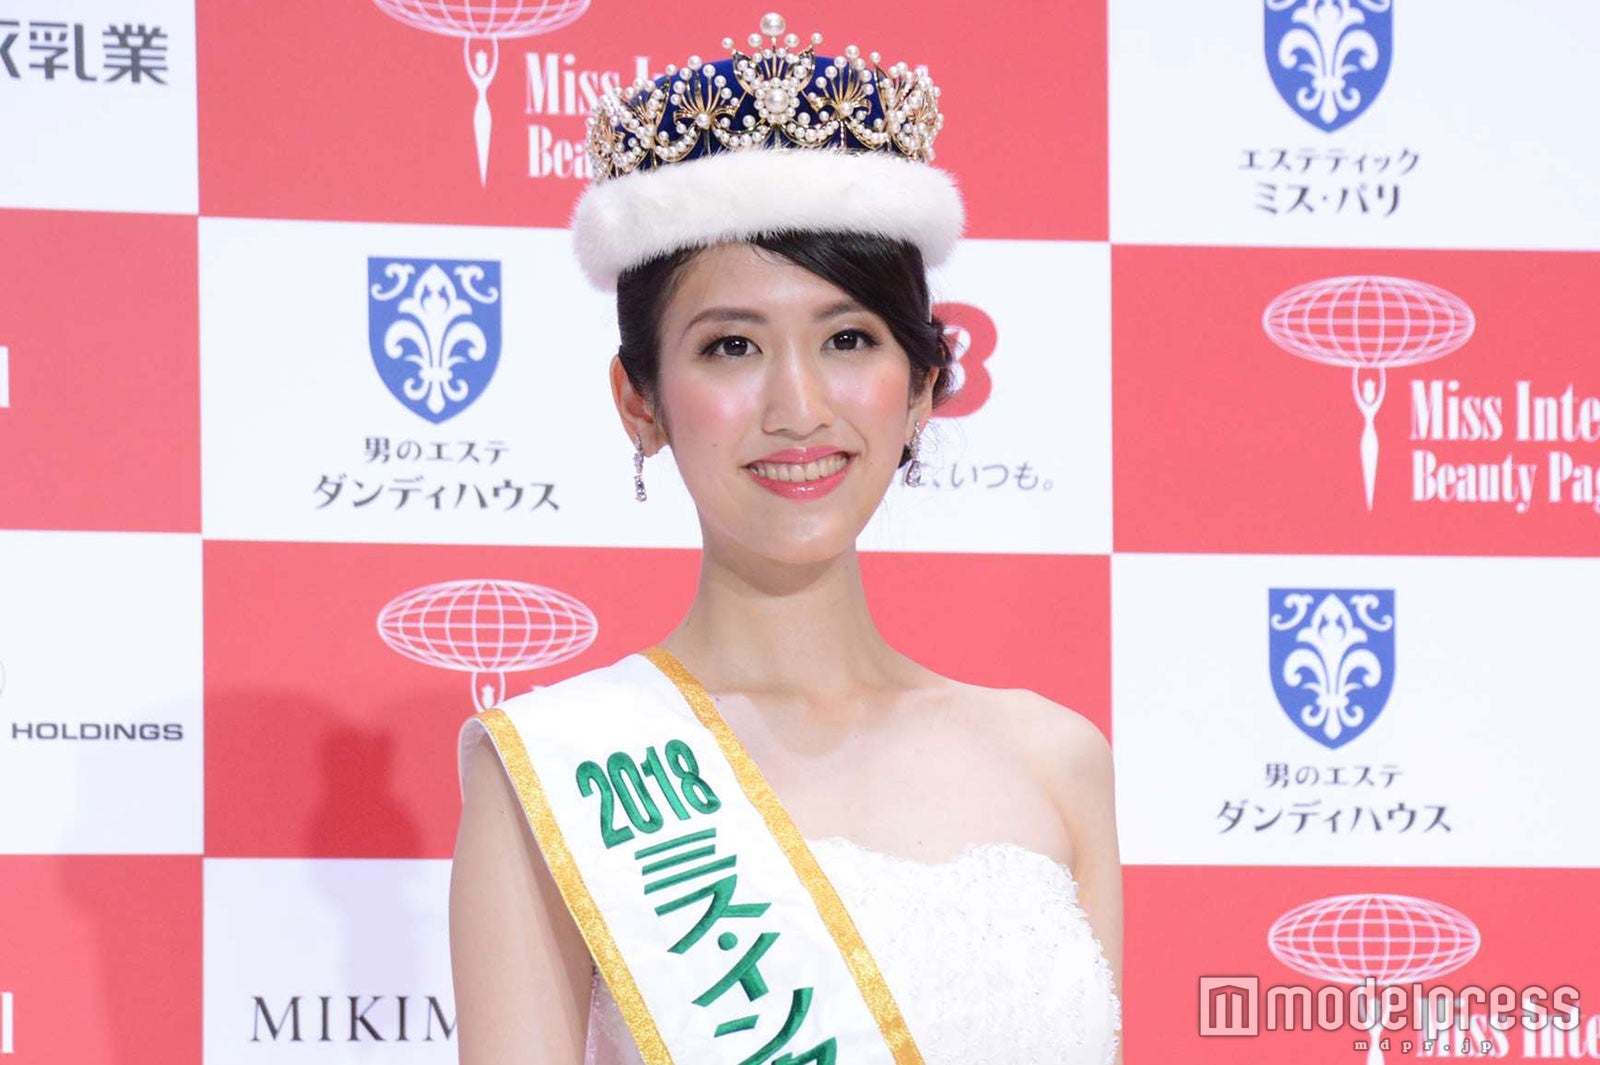 18ミス インターナショナル日本代表 決定 現役東大生が2冠の快挙 杉本雛乃 モデルプレス